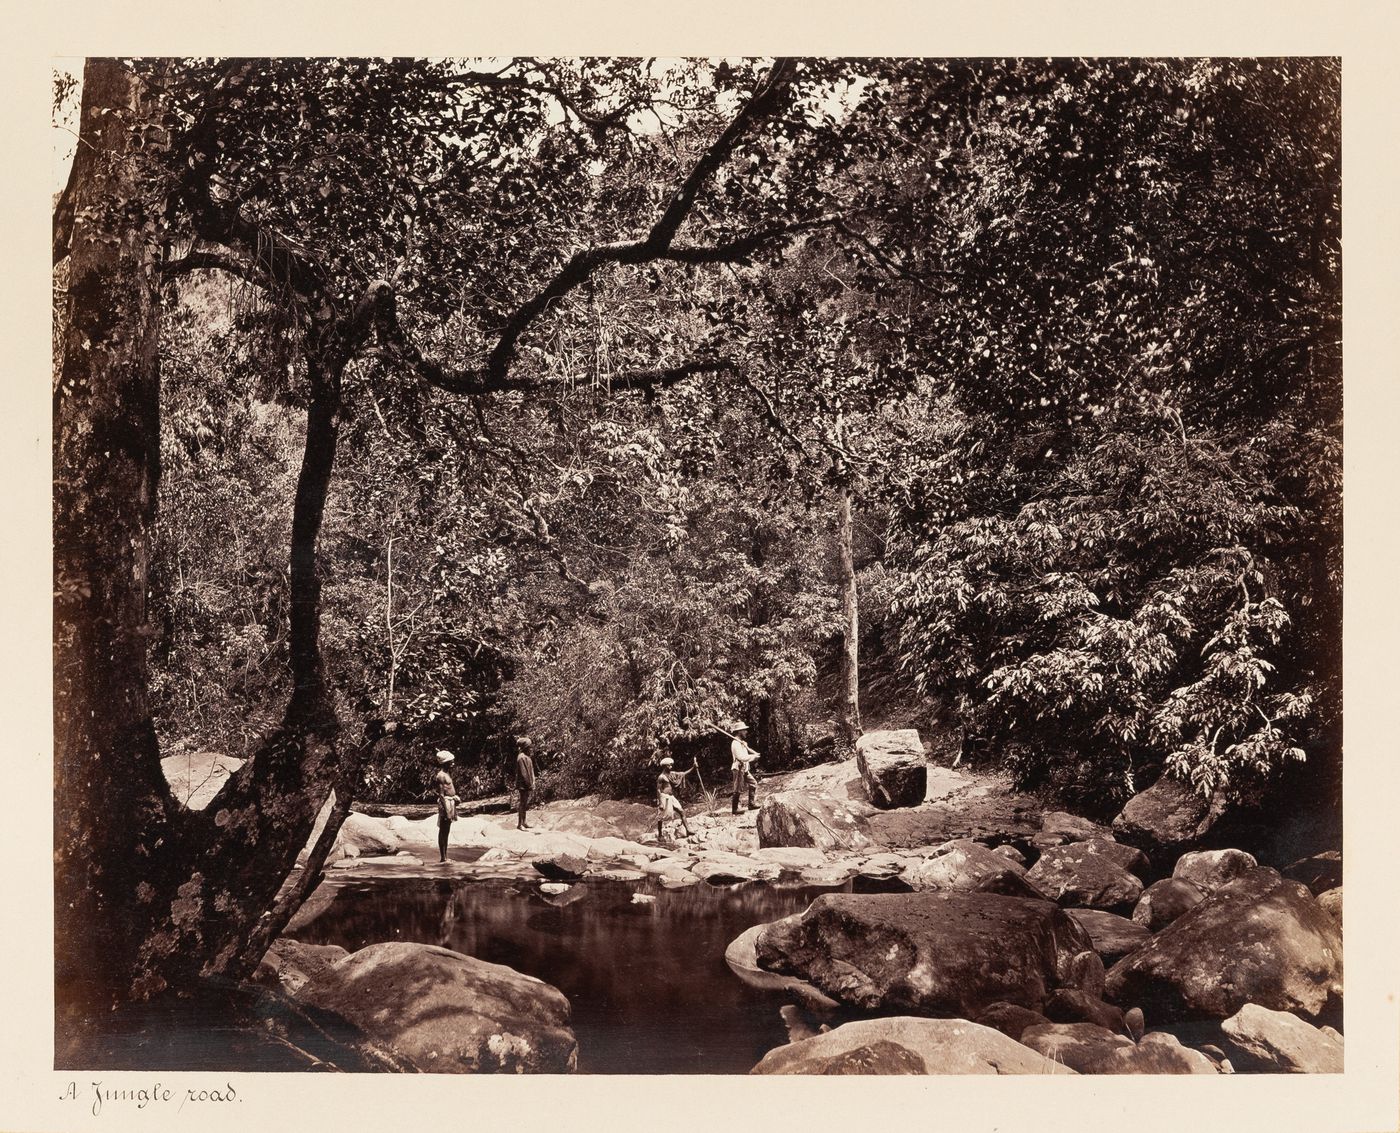 View of men walking along a riverbank, Ceylon (now Sri Lanka)